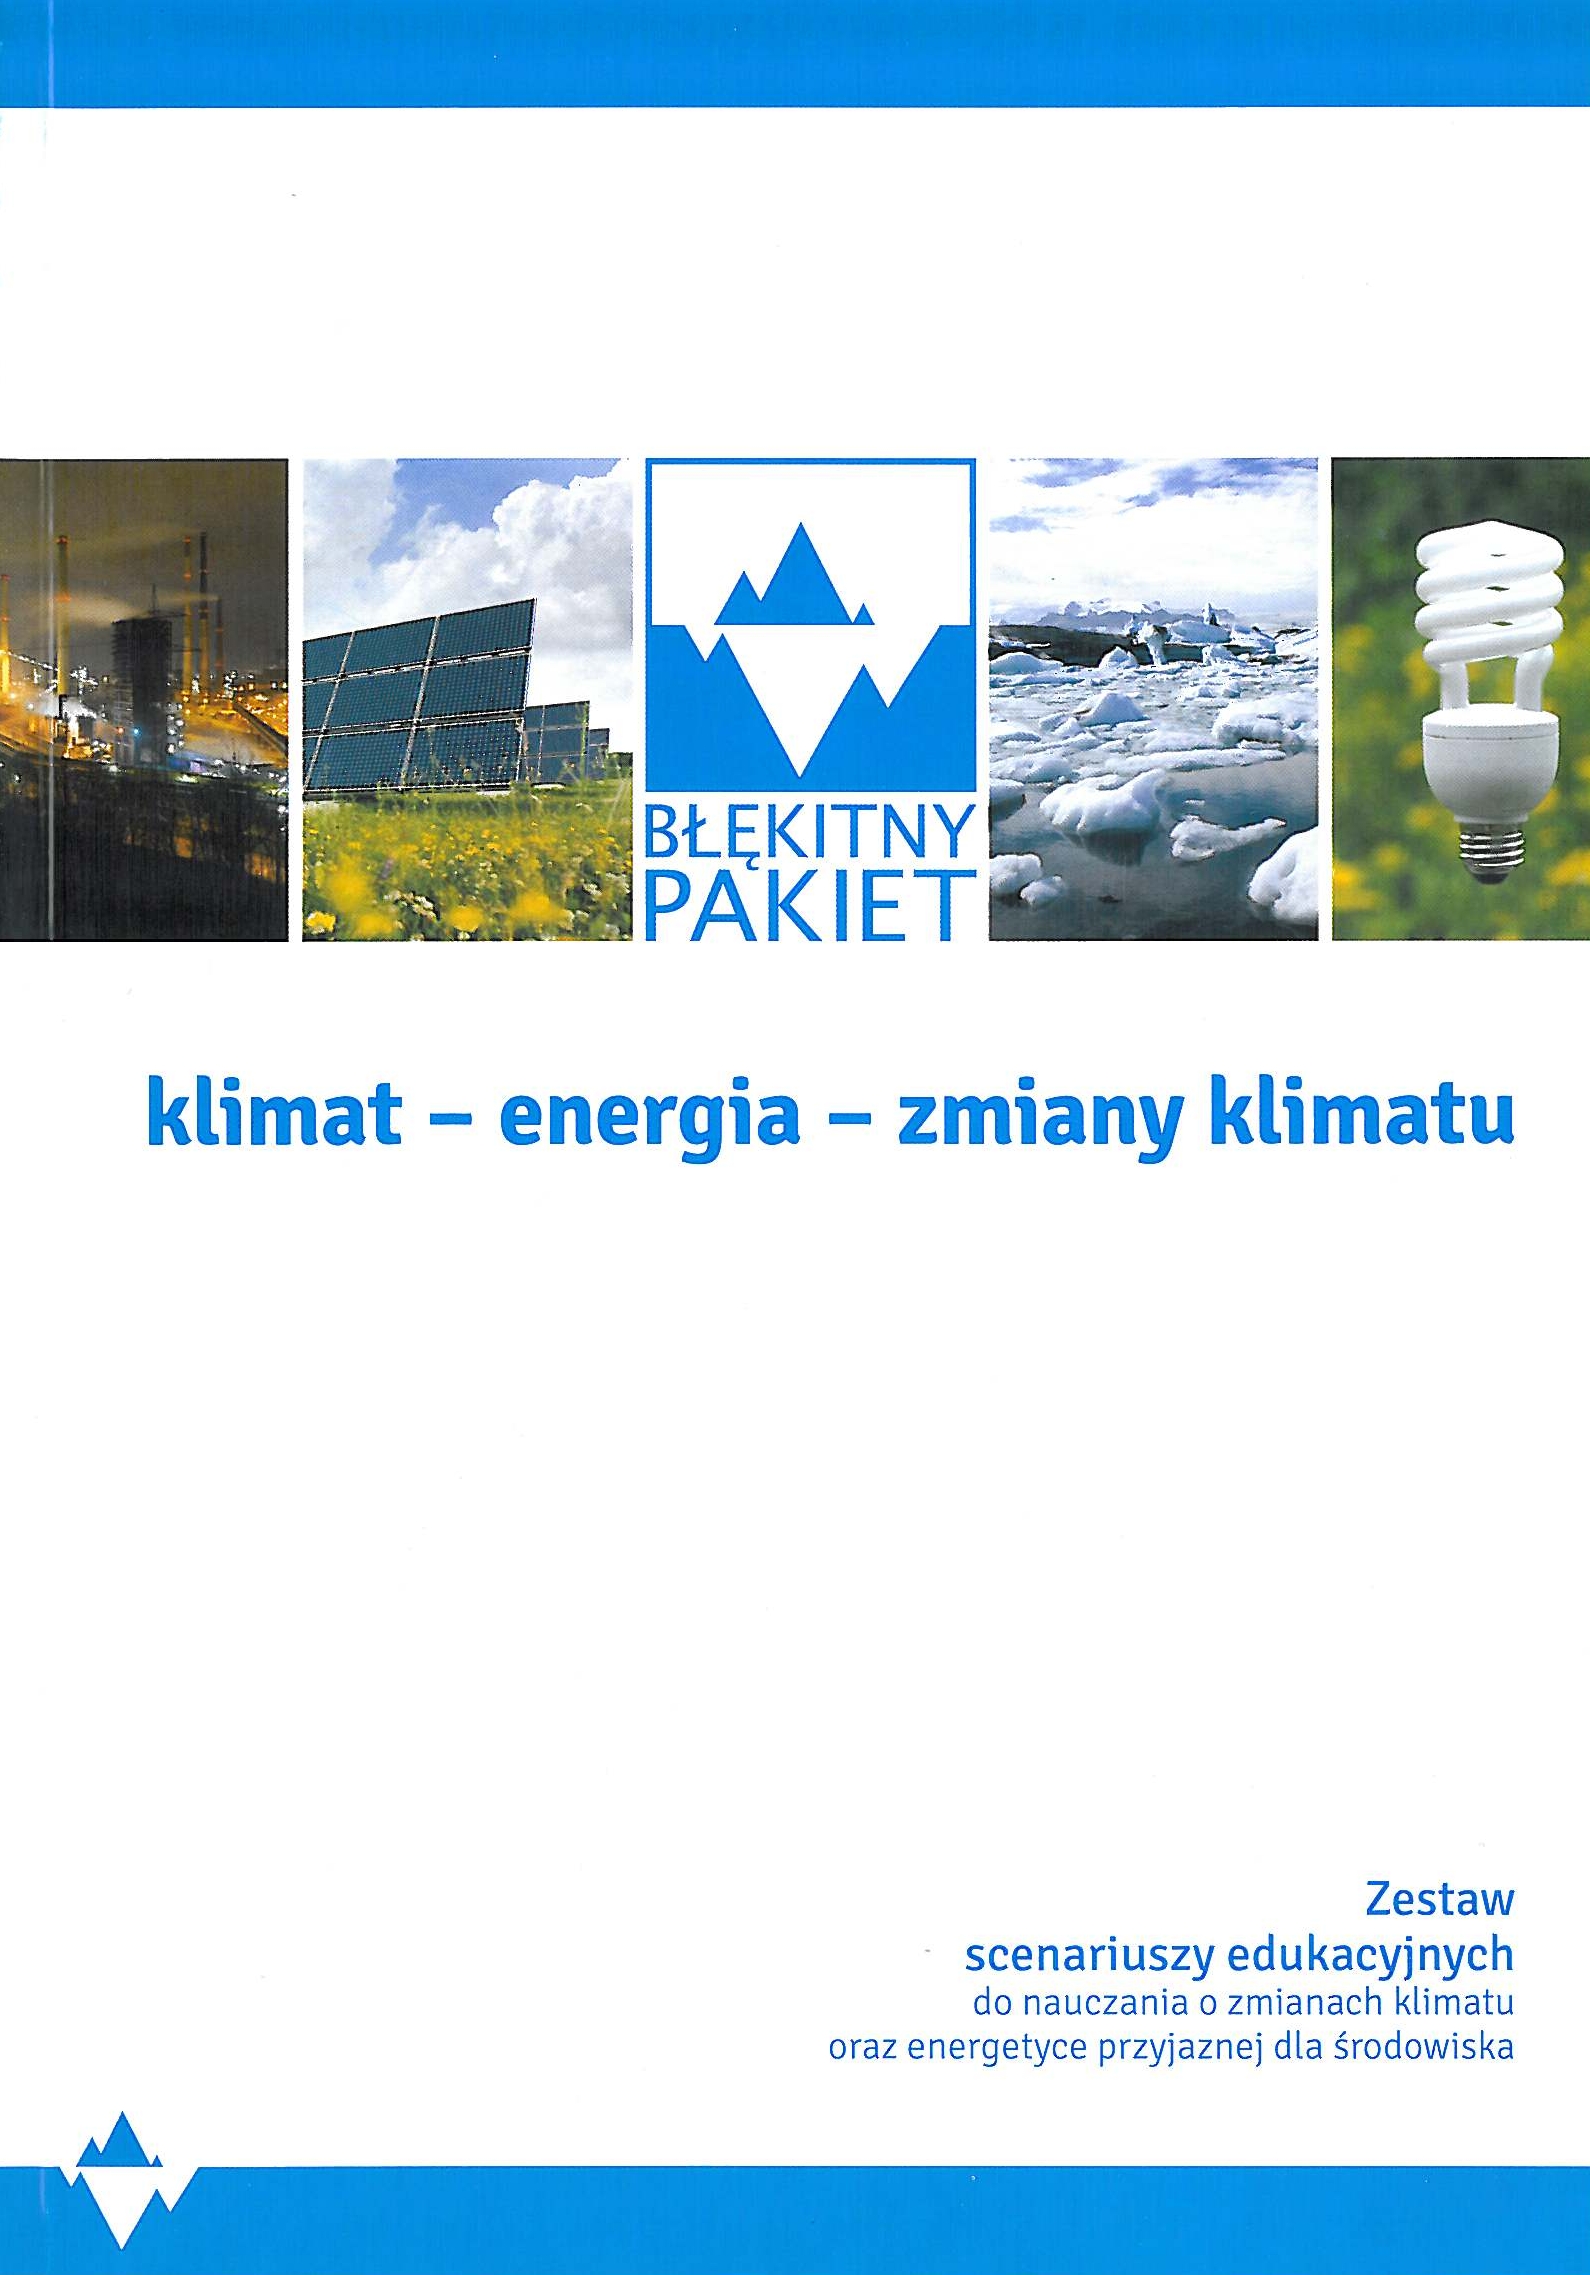 Błękitny Pakiet-szkolny program edukacji klimatycznej i energetycznej